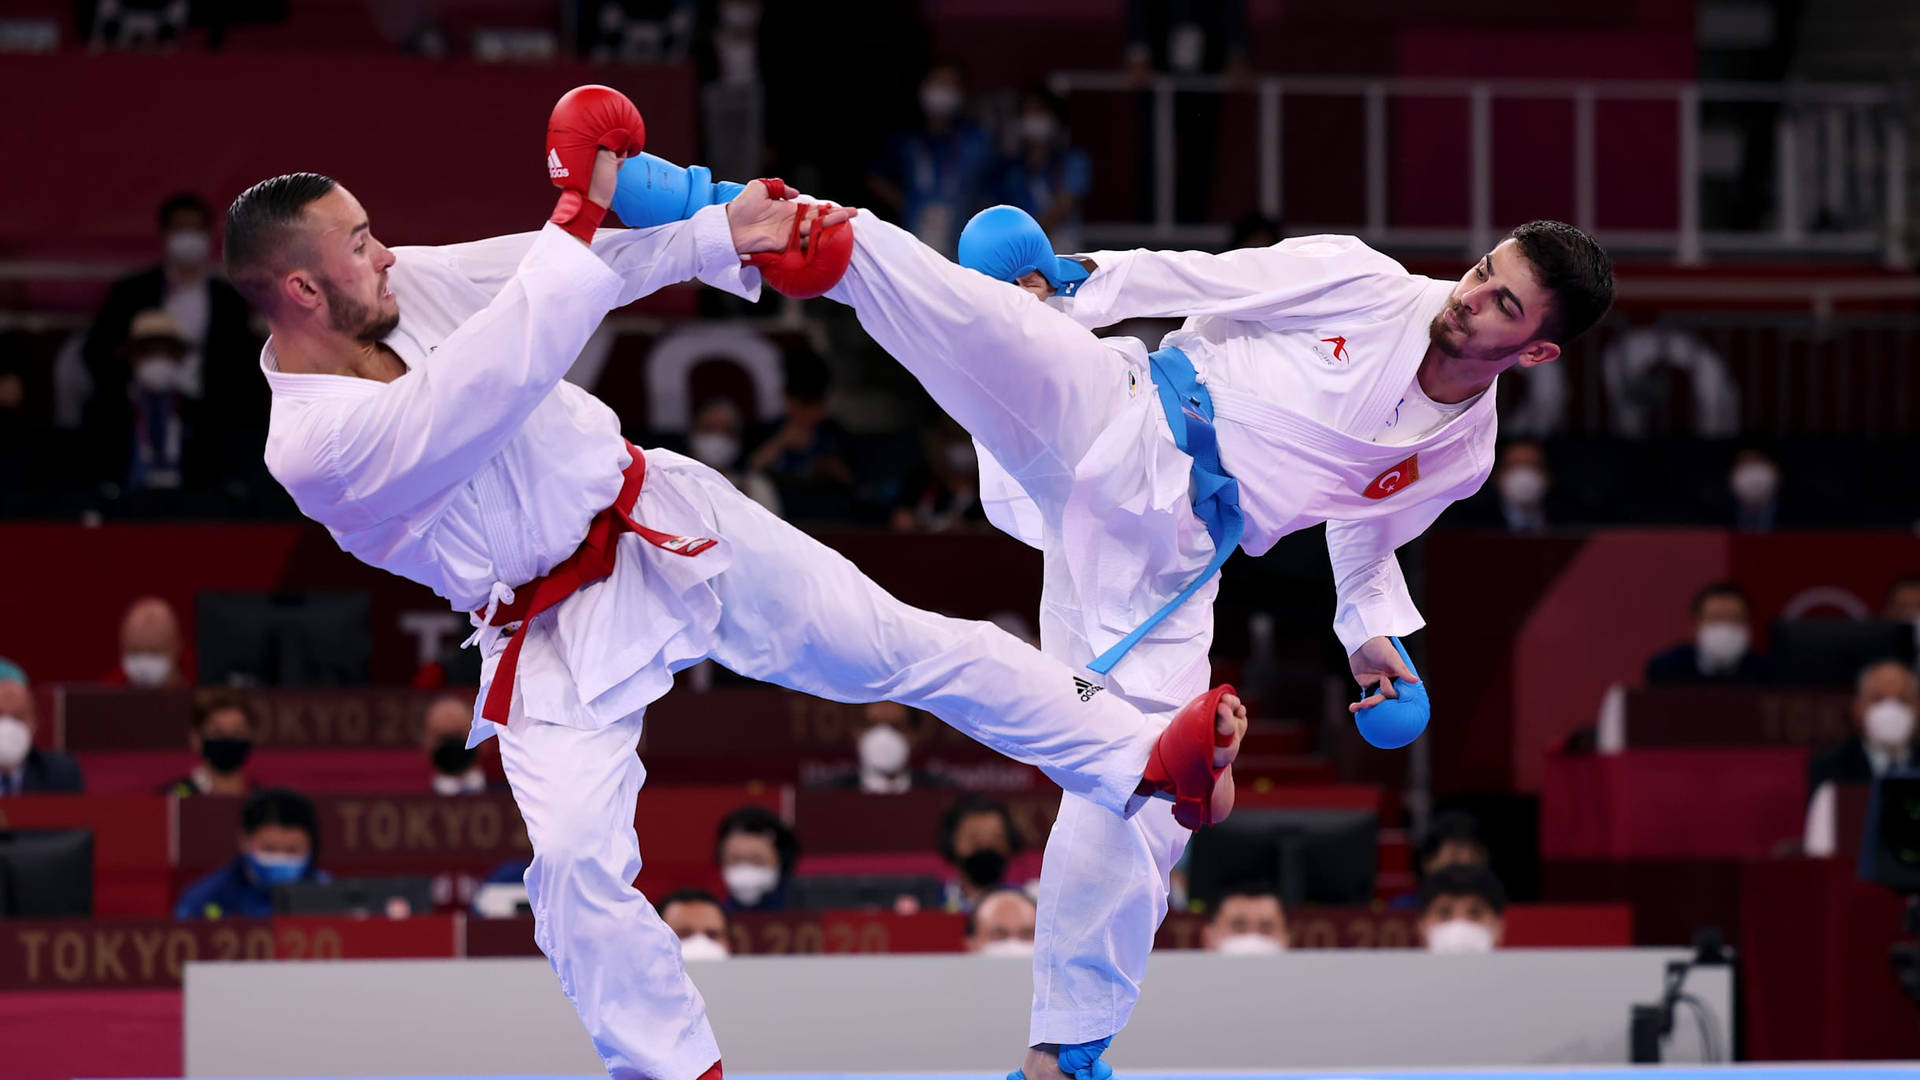 Karateathletes Double Kick En Español: 